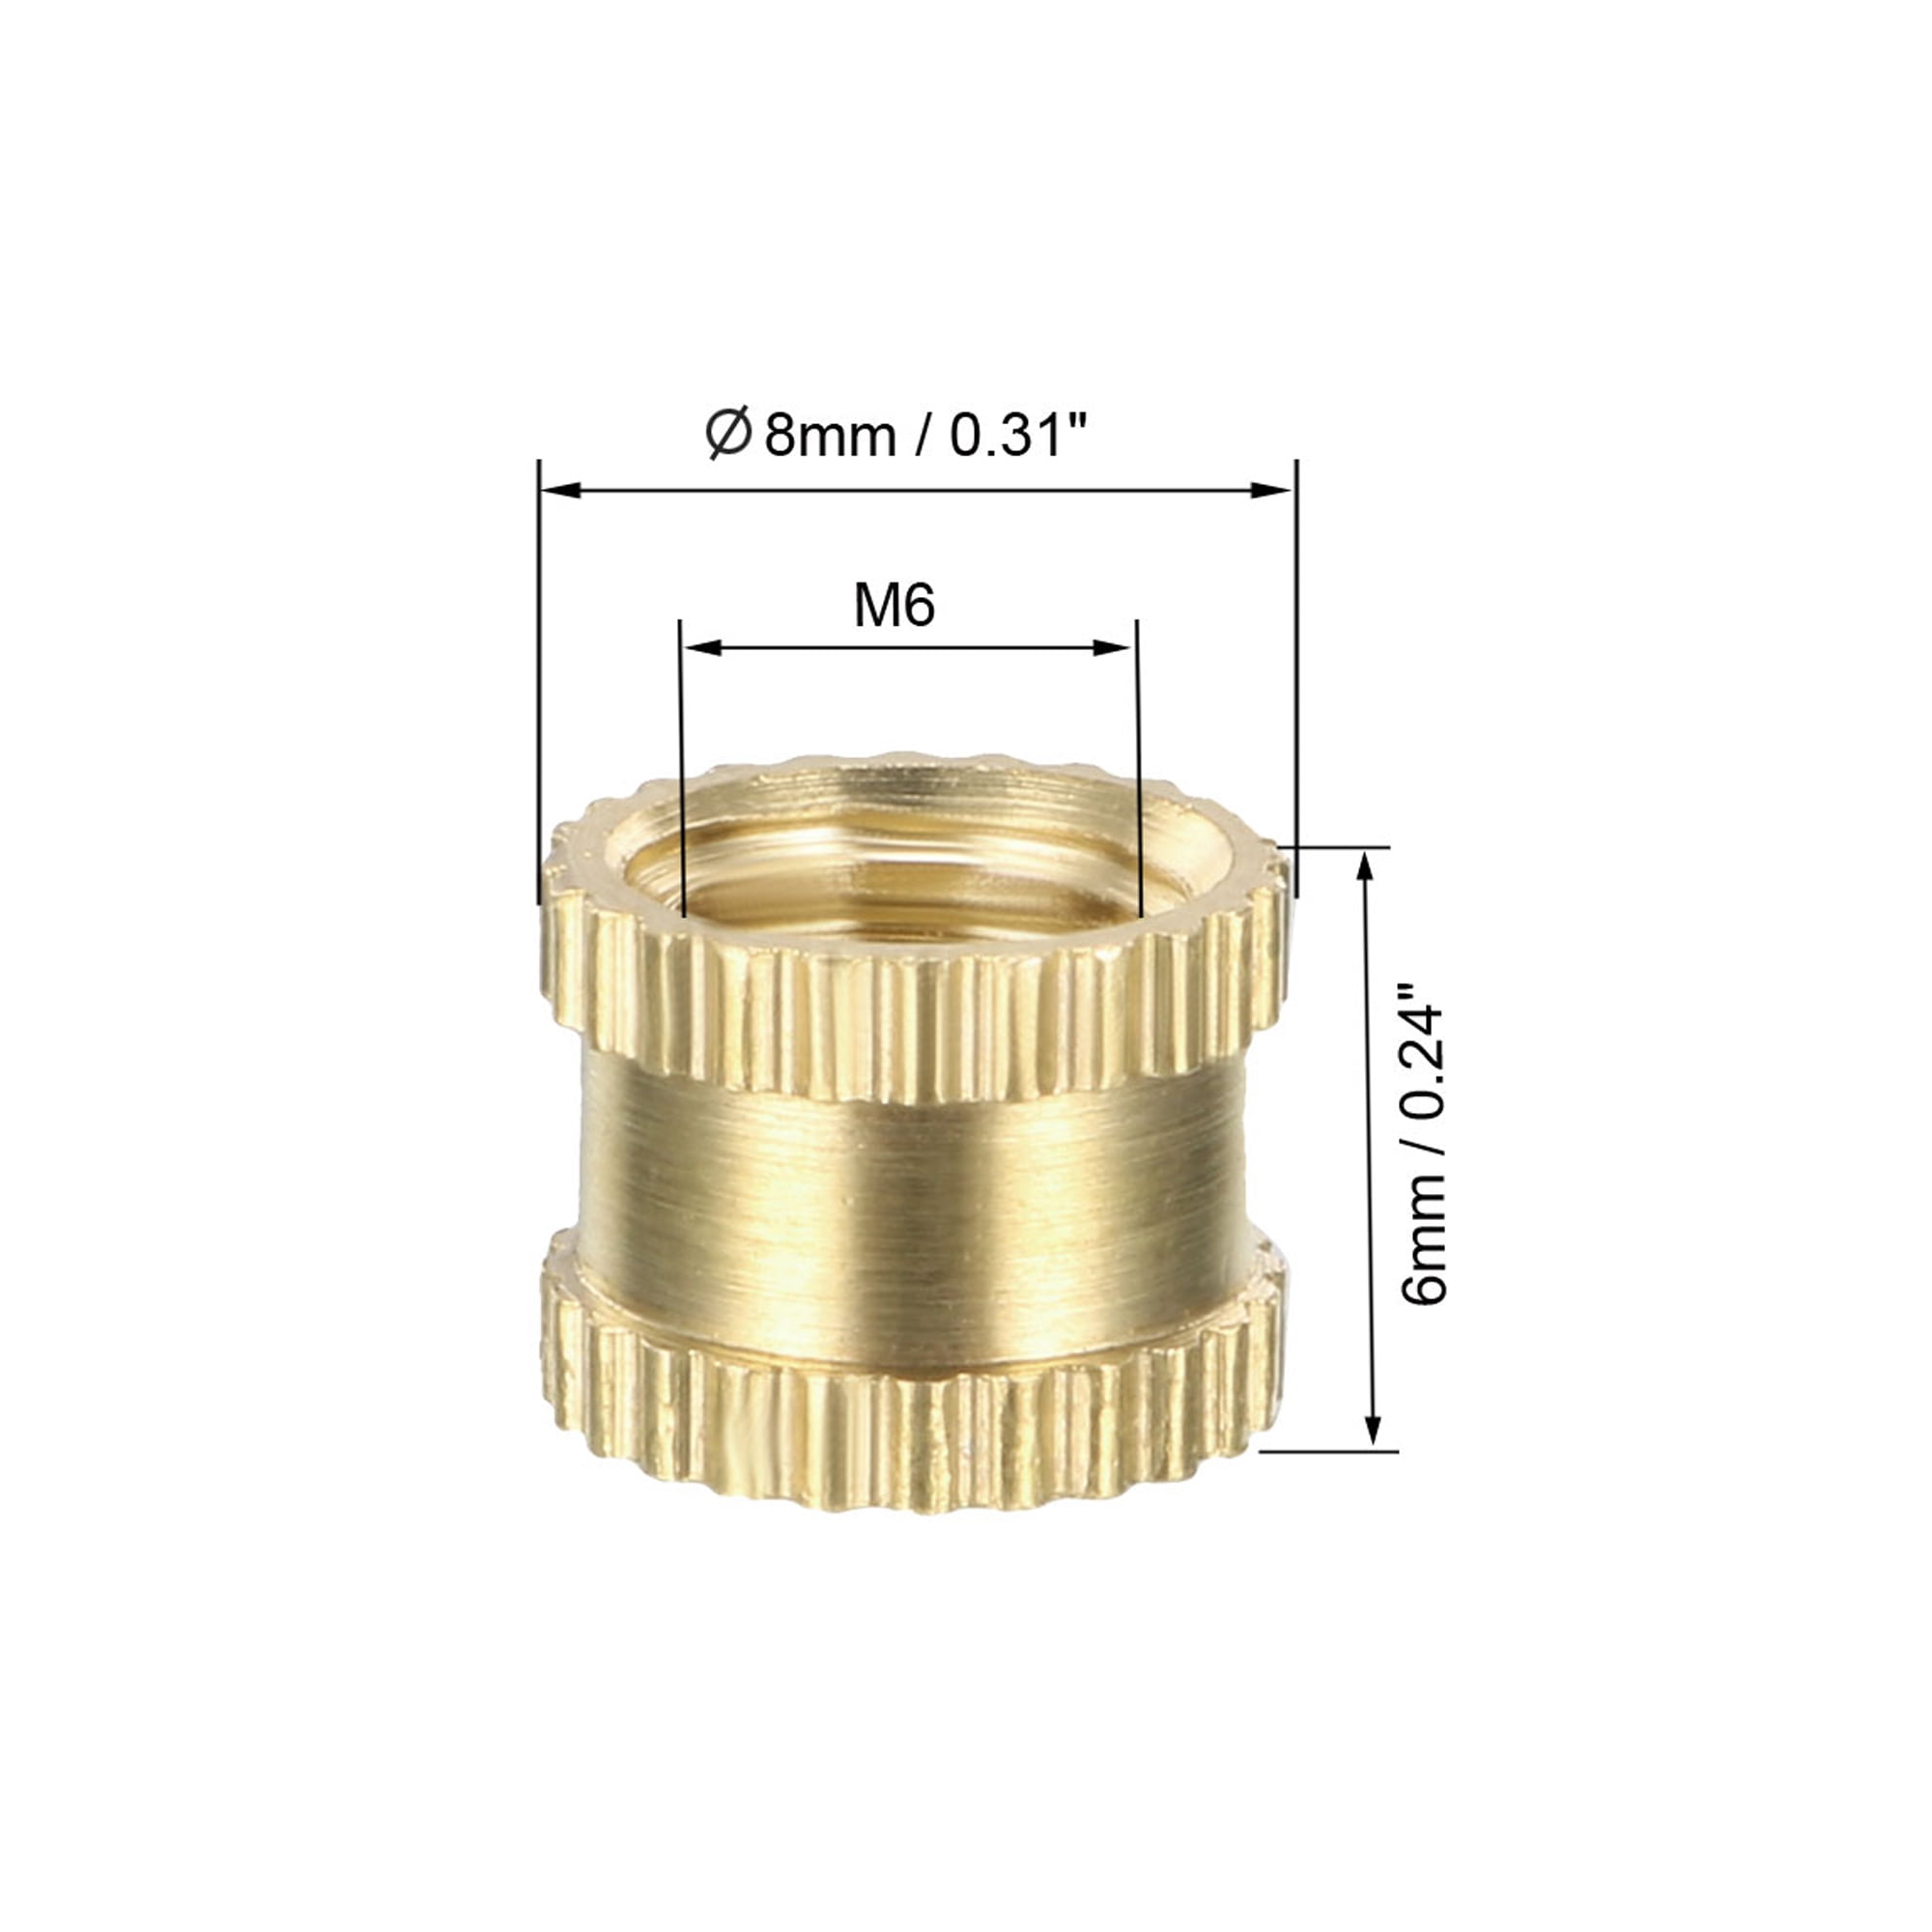 OD L 100pcs Metric Thread Brass Knurl Nuts M6x6mm Copper Knurled Nuts -8mm​ 